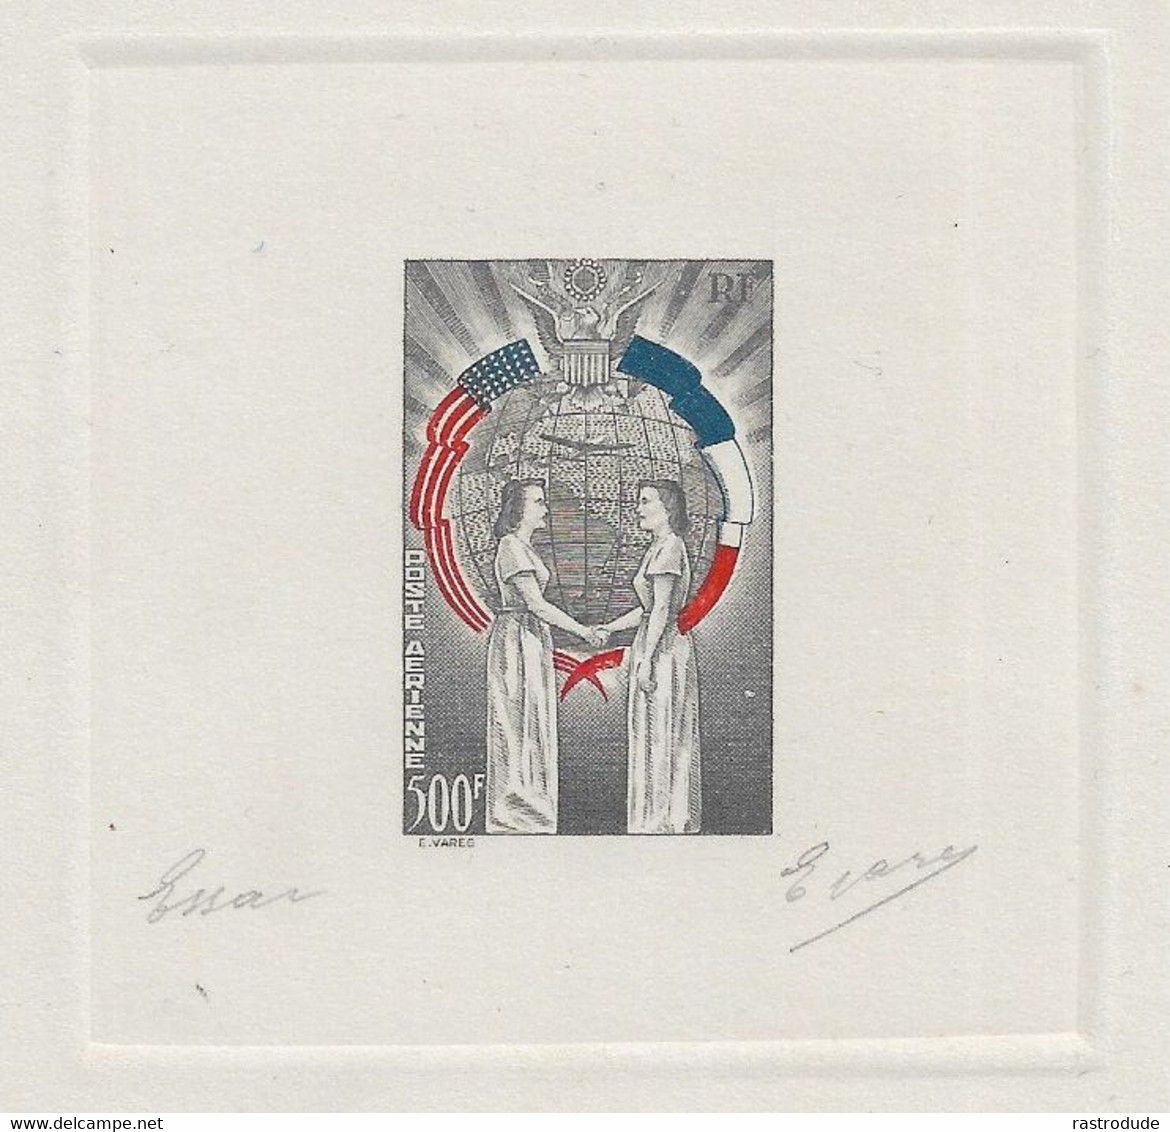 1949 FRANCE - TROIS COULEURS EPREUVE D'ARTISTE - NON EMIS -  L'AMITIÉ FRANCO-AMÉRICAINE SIGNE E.VARES - RARE - Künstlerentwürfe